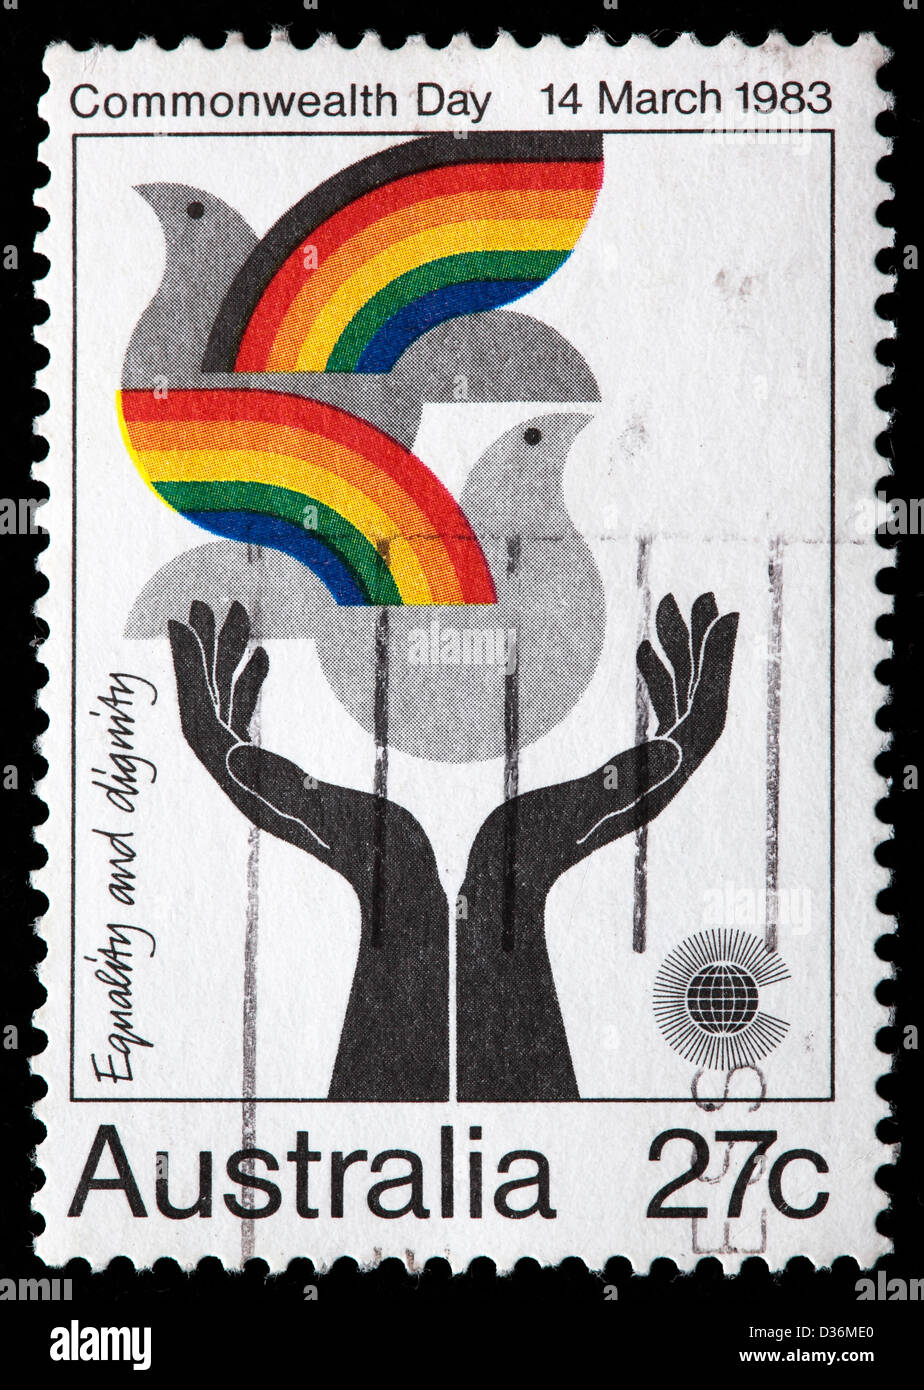 La igualdad y la dignidad de la persona, del día del commonwealth, sello, Australia, 1983 Foto de stock